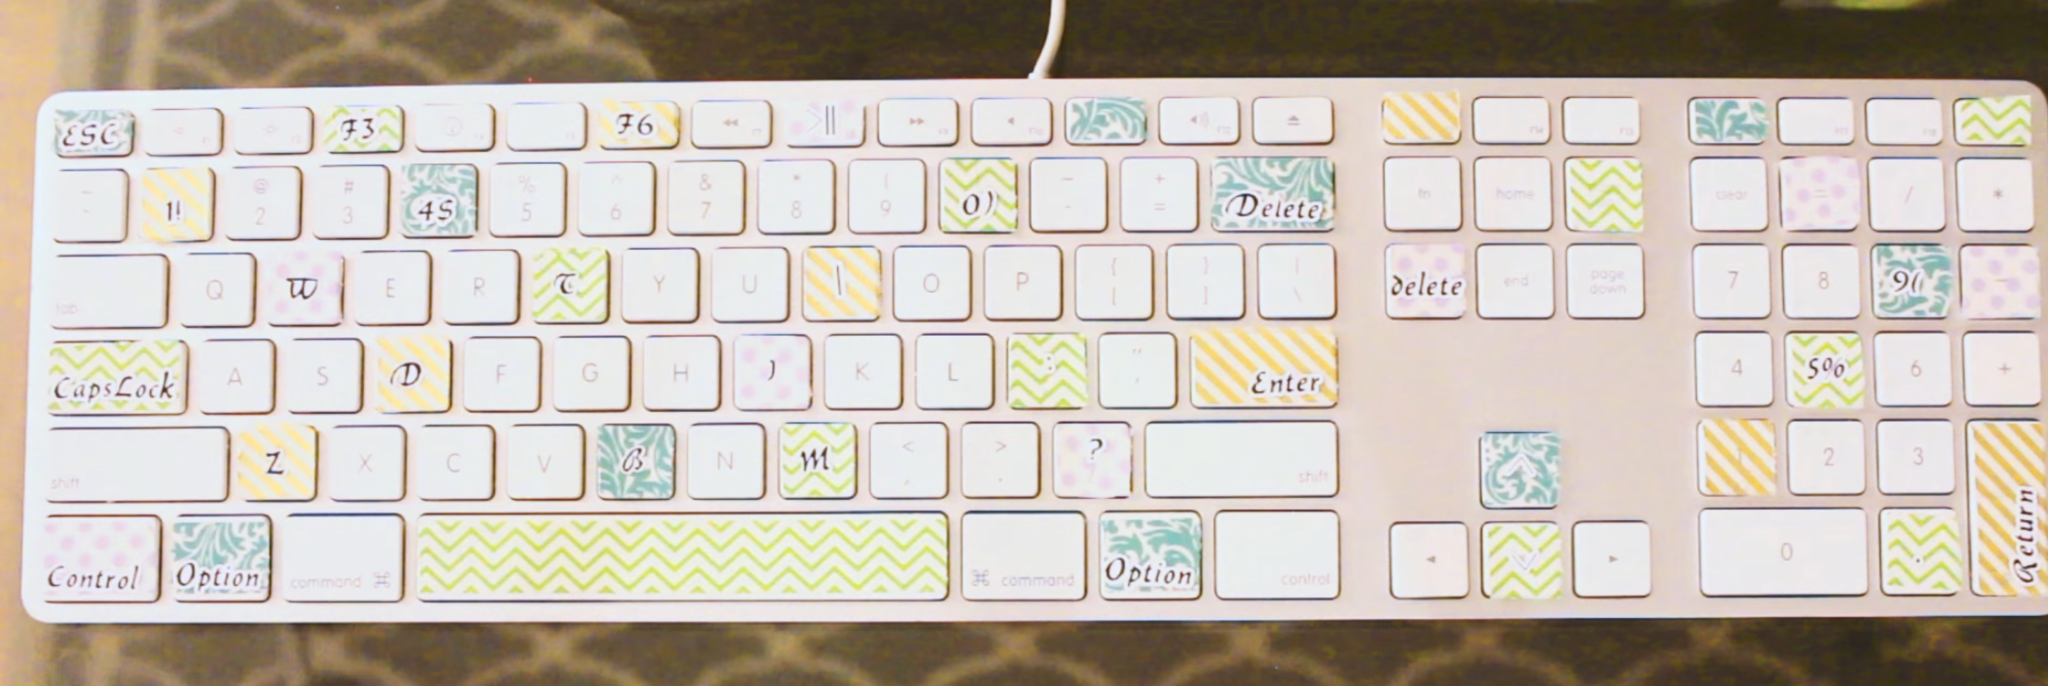 washi tape keyboard